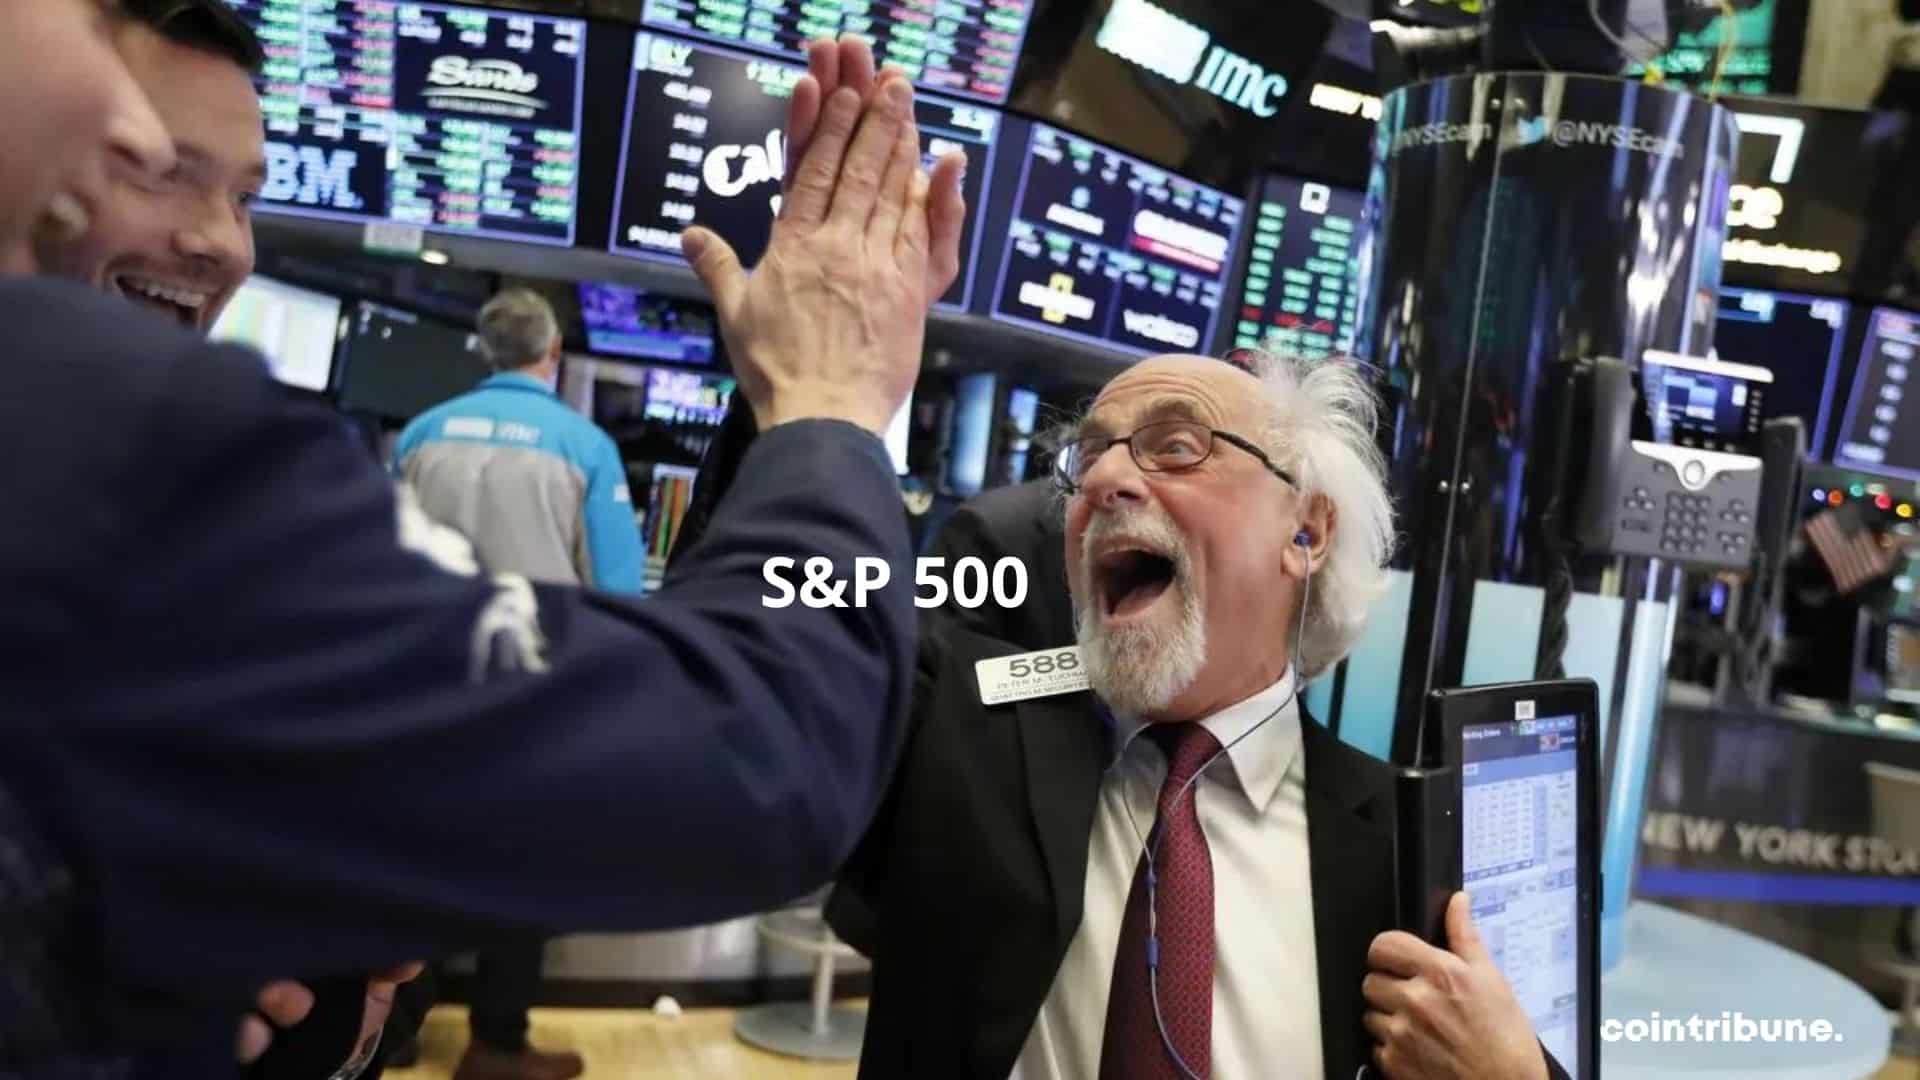 Bourse S&P 500